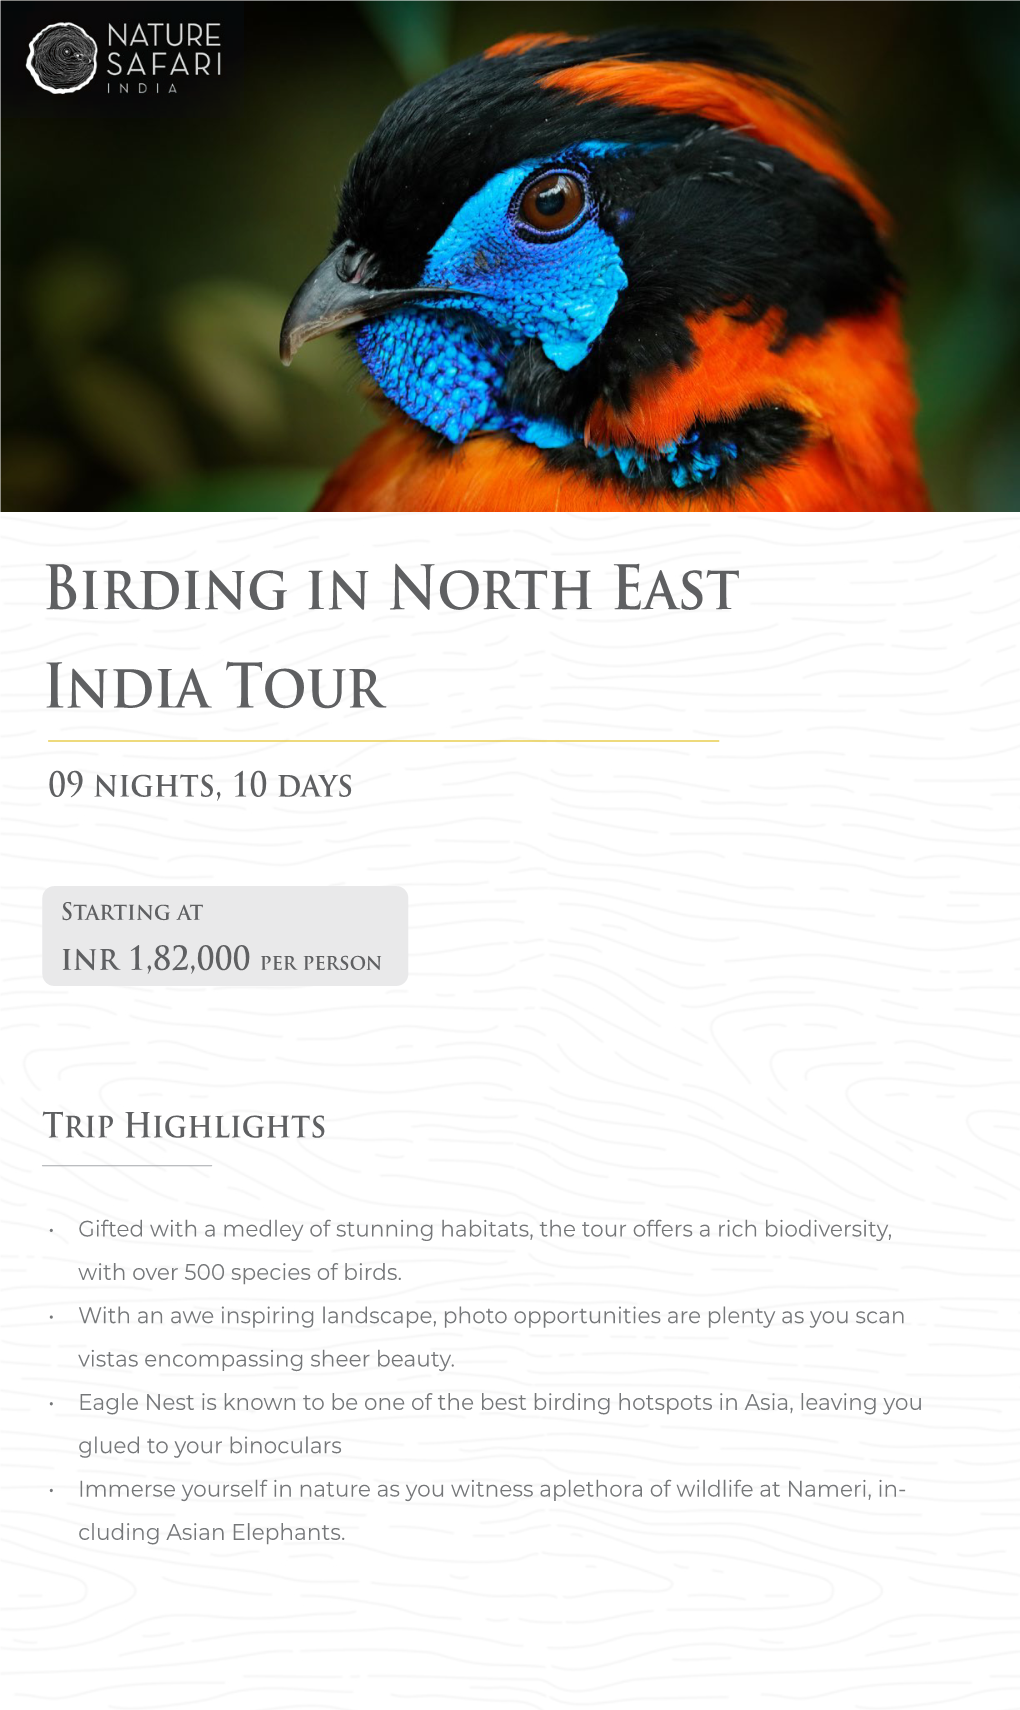 Birding in North East India Tour